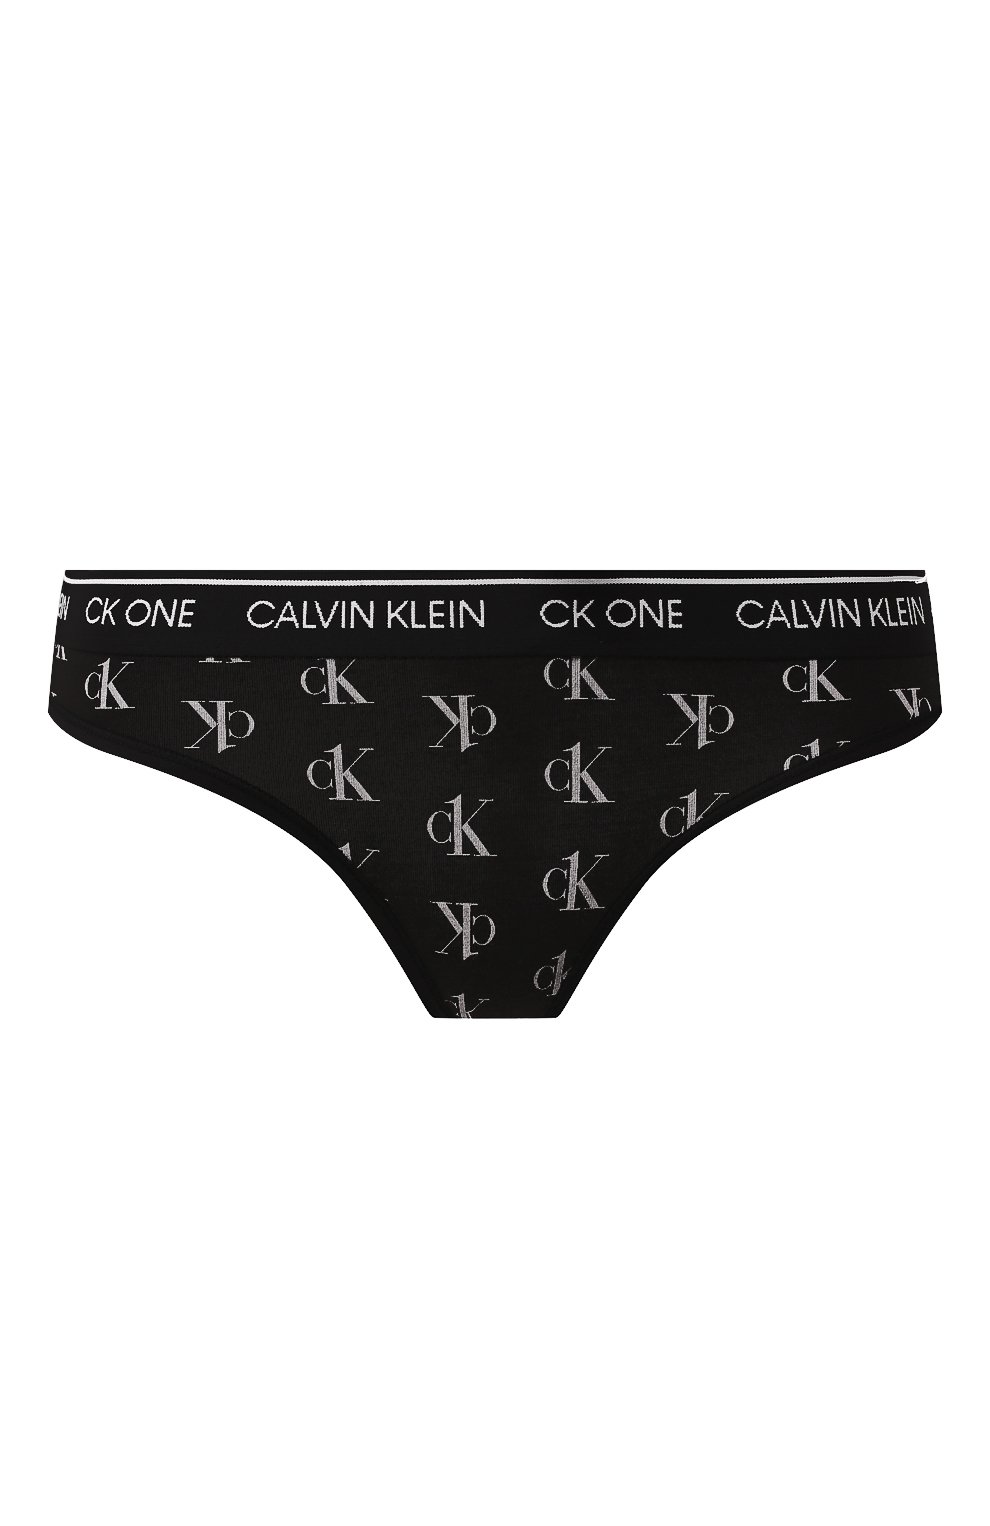 Женские трусы стринги Calvin Klein - купить в интернет-магазине